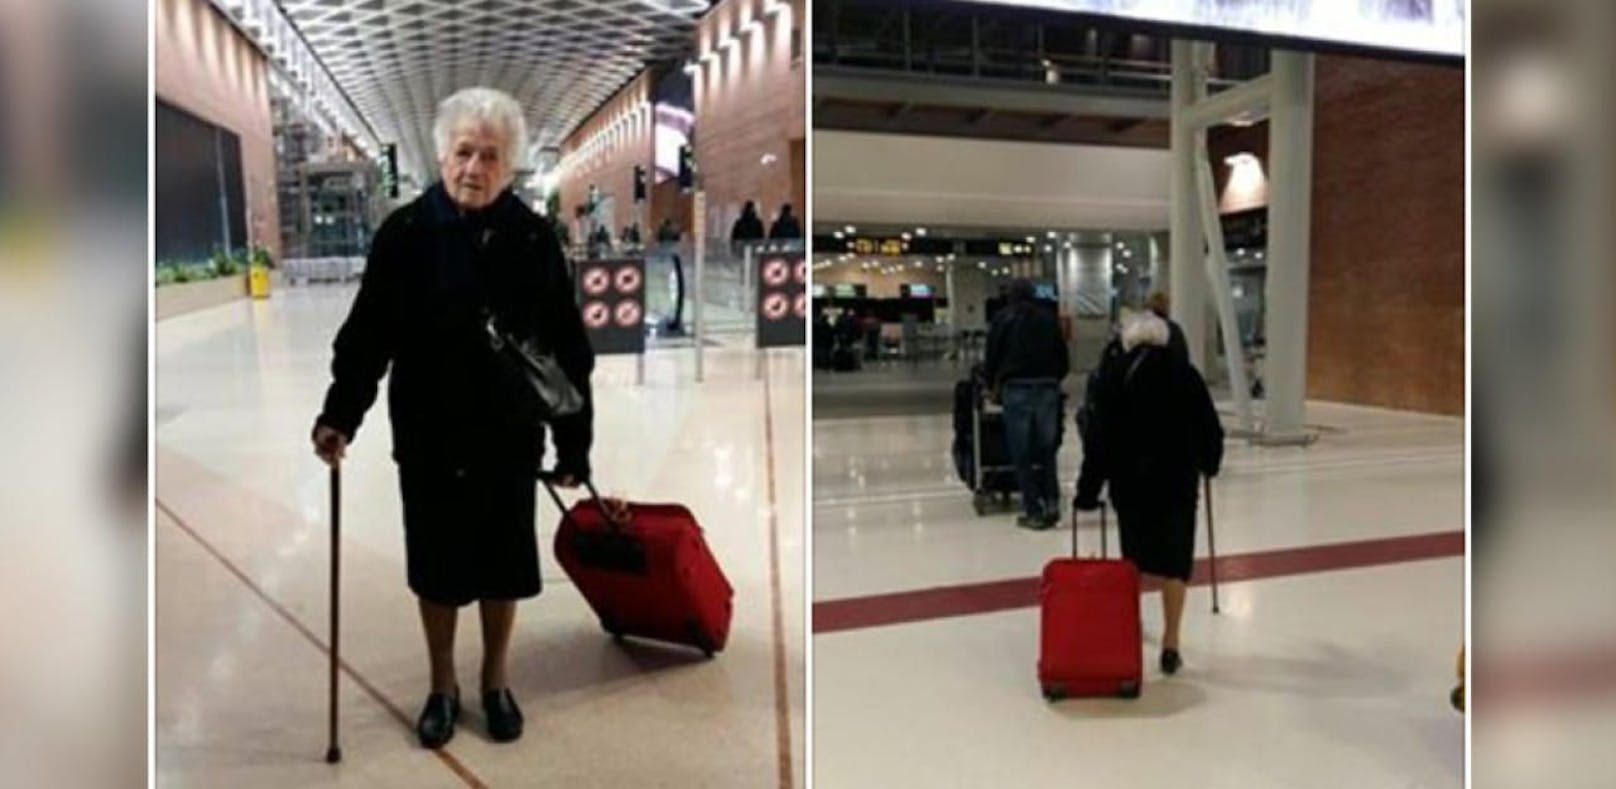 Oma Irma (93) geht auf Reisen - aber nicht zum Vergnügen.